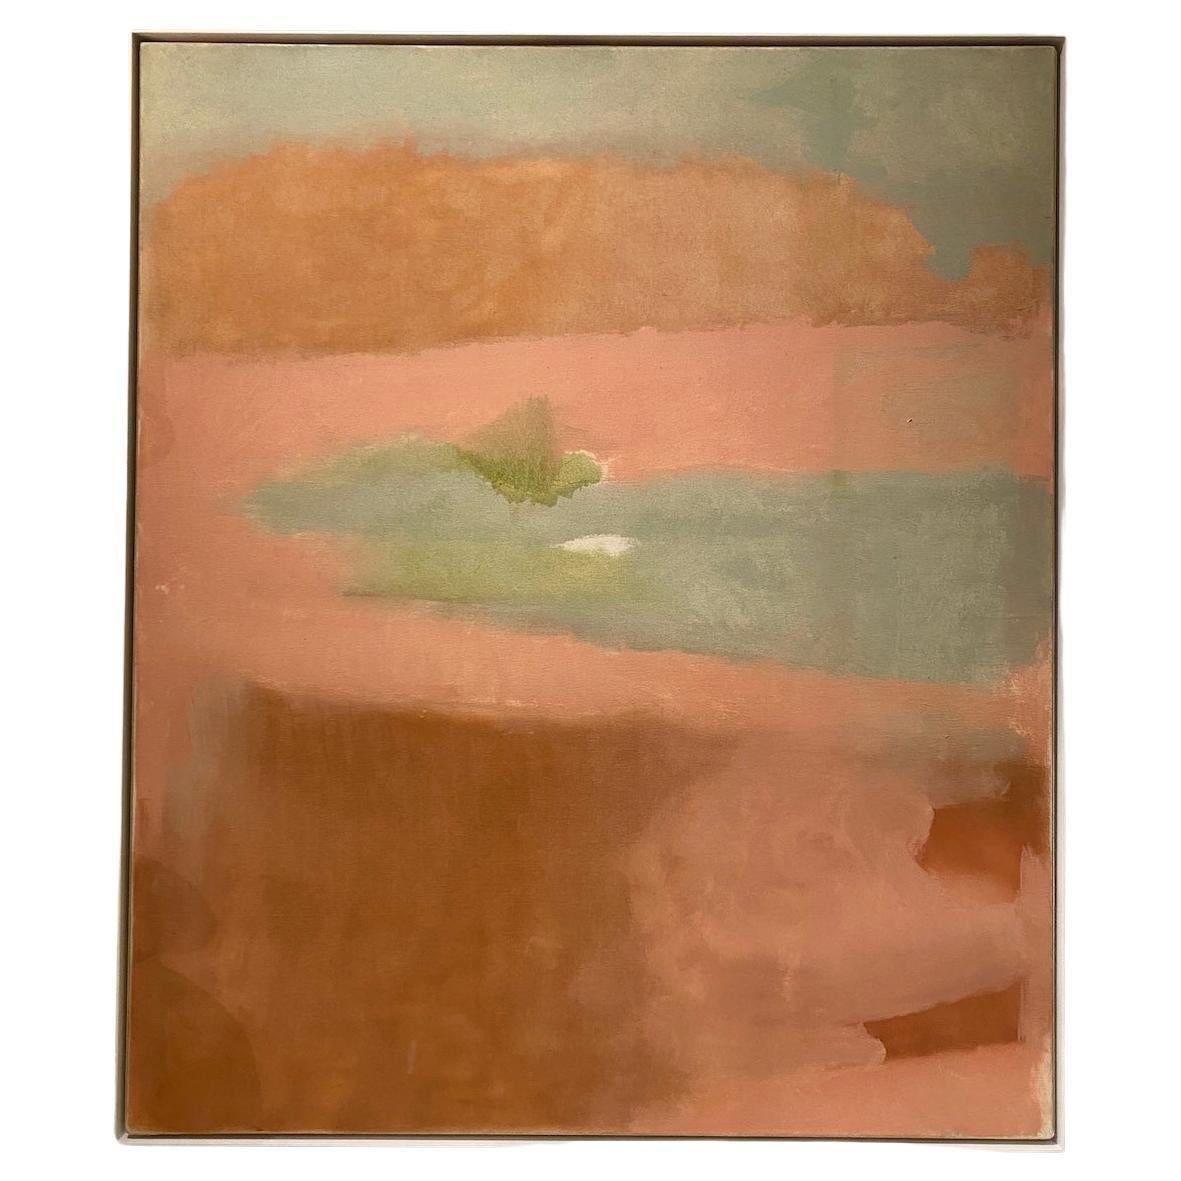 "Sagapoback", ein wunderschönes Farbfeldgemälde in Öl auf Leinwand des amerikanischen Künstlers Esteban Vicente (1903-2001). Er wurde in Turégano, Spanien, geboren und gehörte zur ersten Generation der abstrakten Expressionisten der New York School.